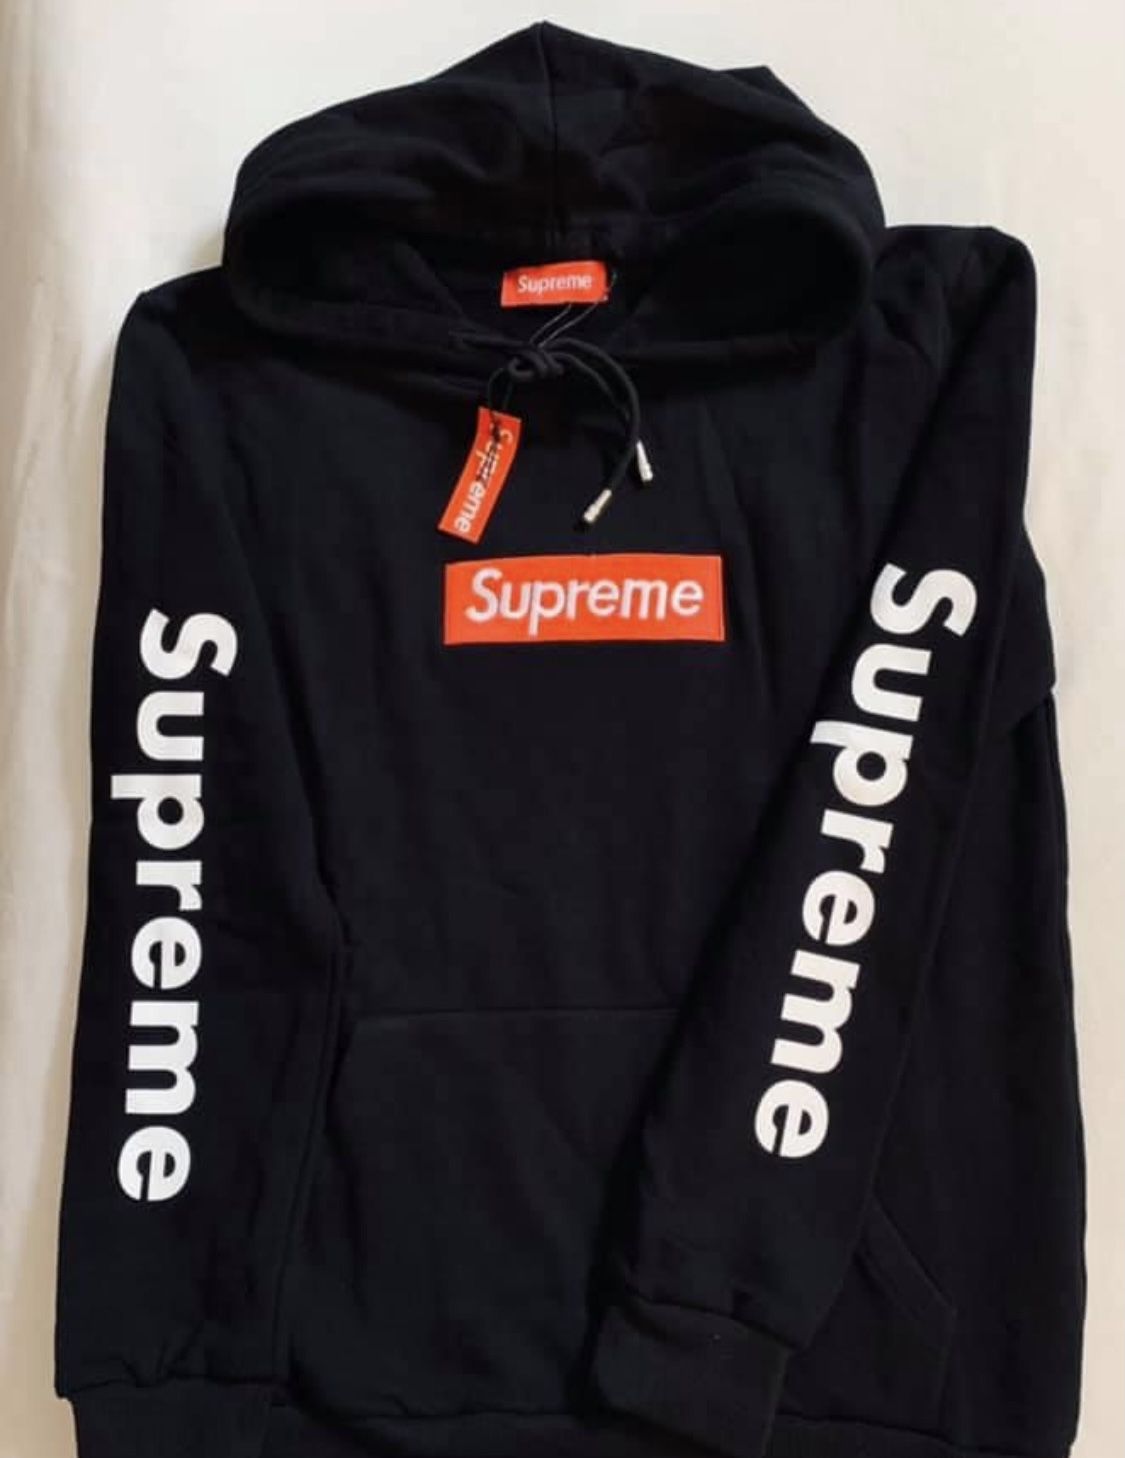 Supreme hoodie /pick up / Drop off